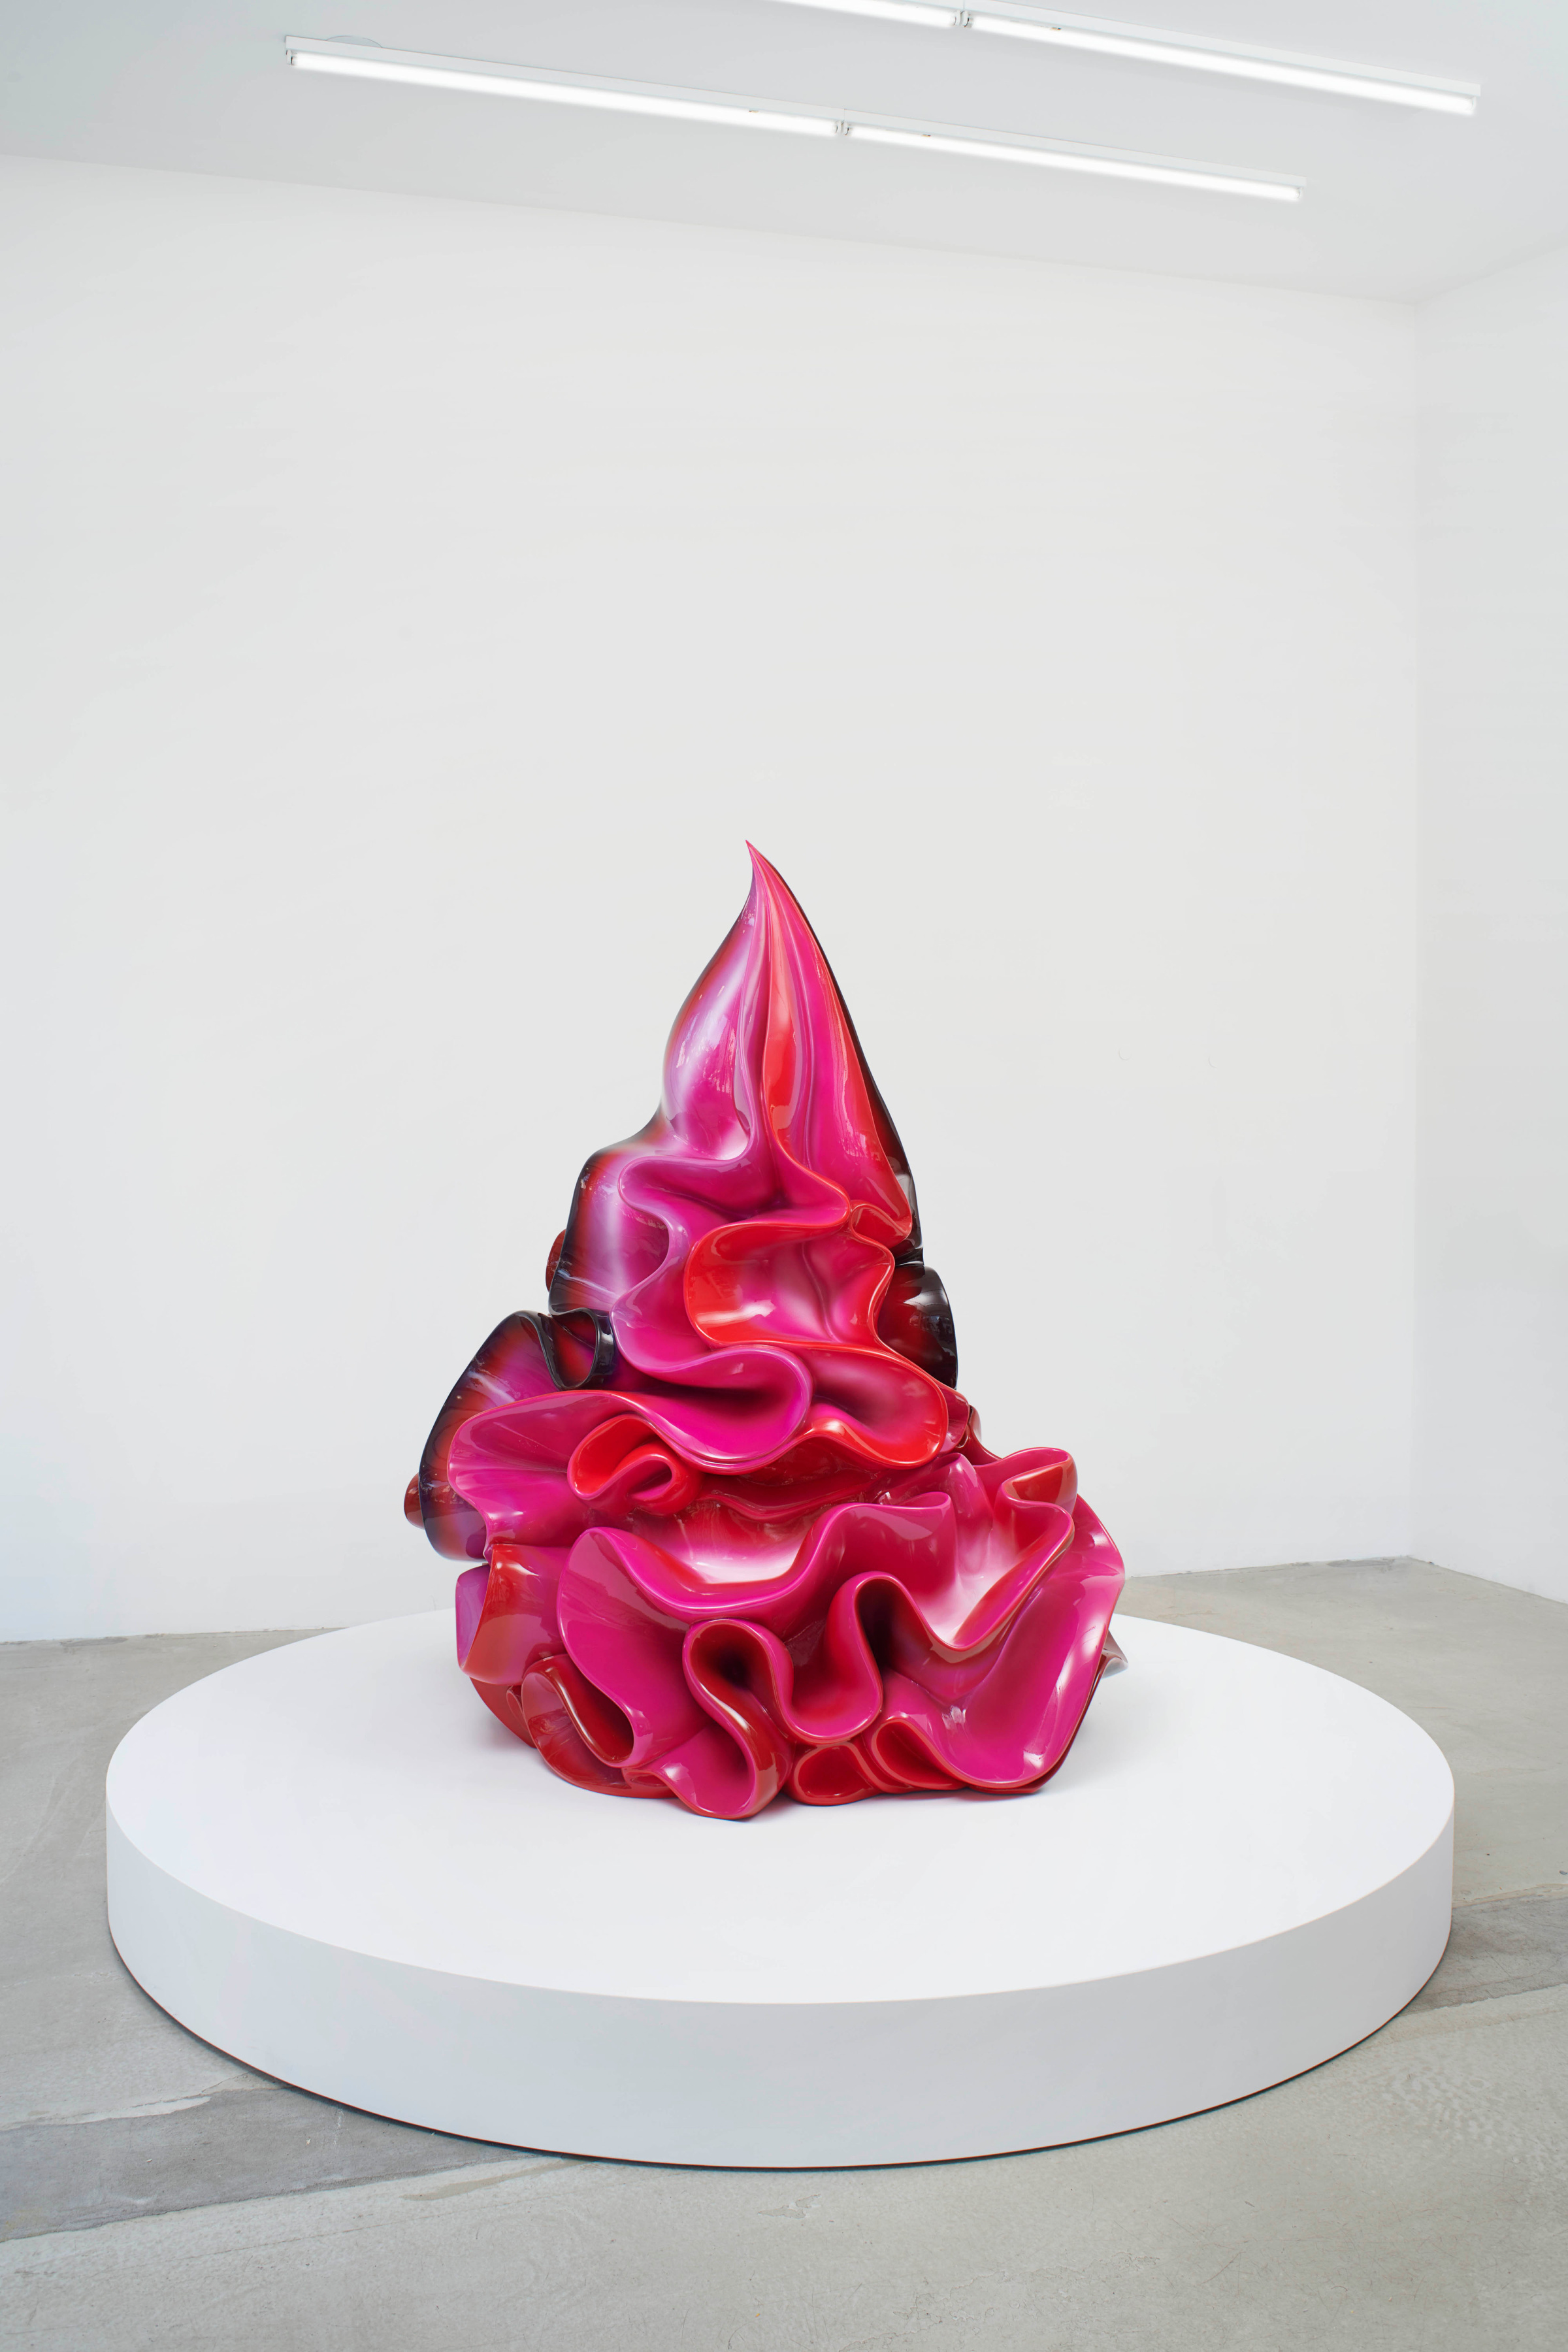 A fiberglass sculpture of a fluorescent pink dollop of whipped cream.